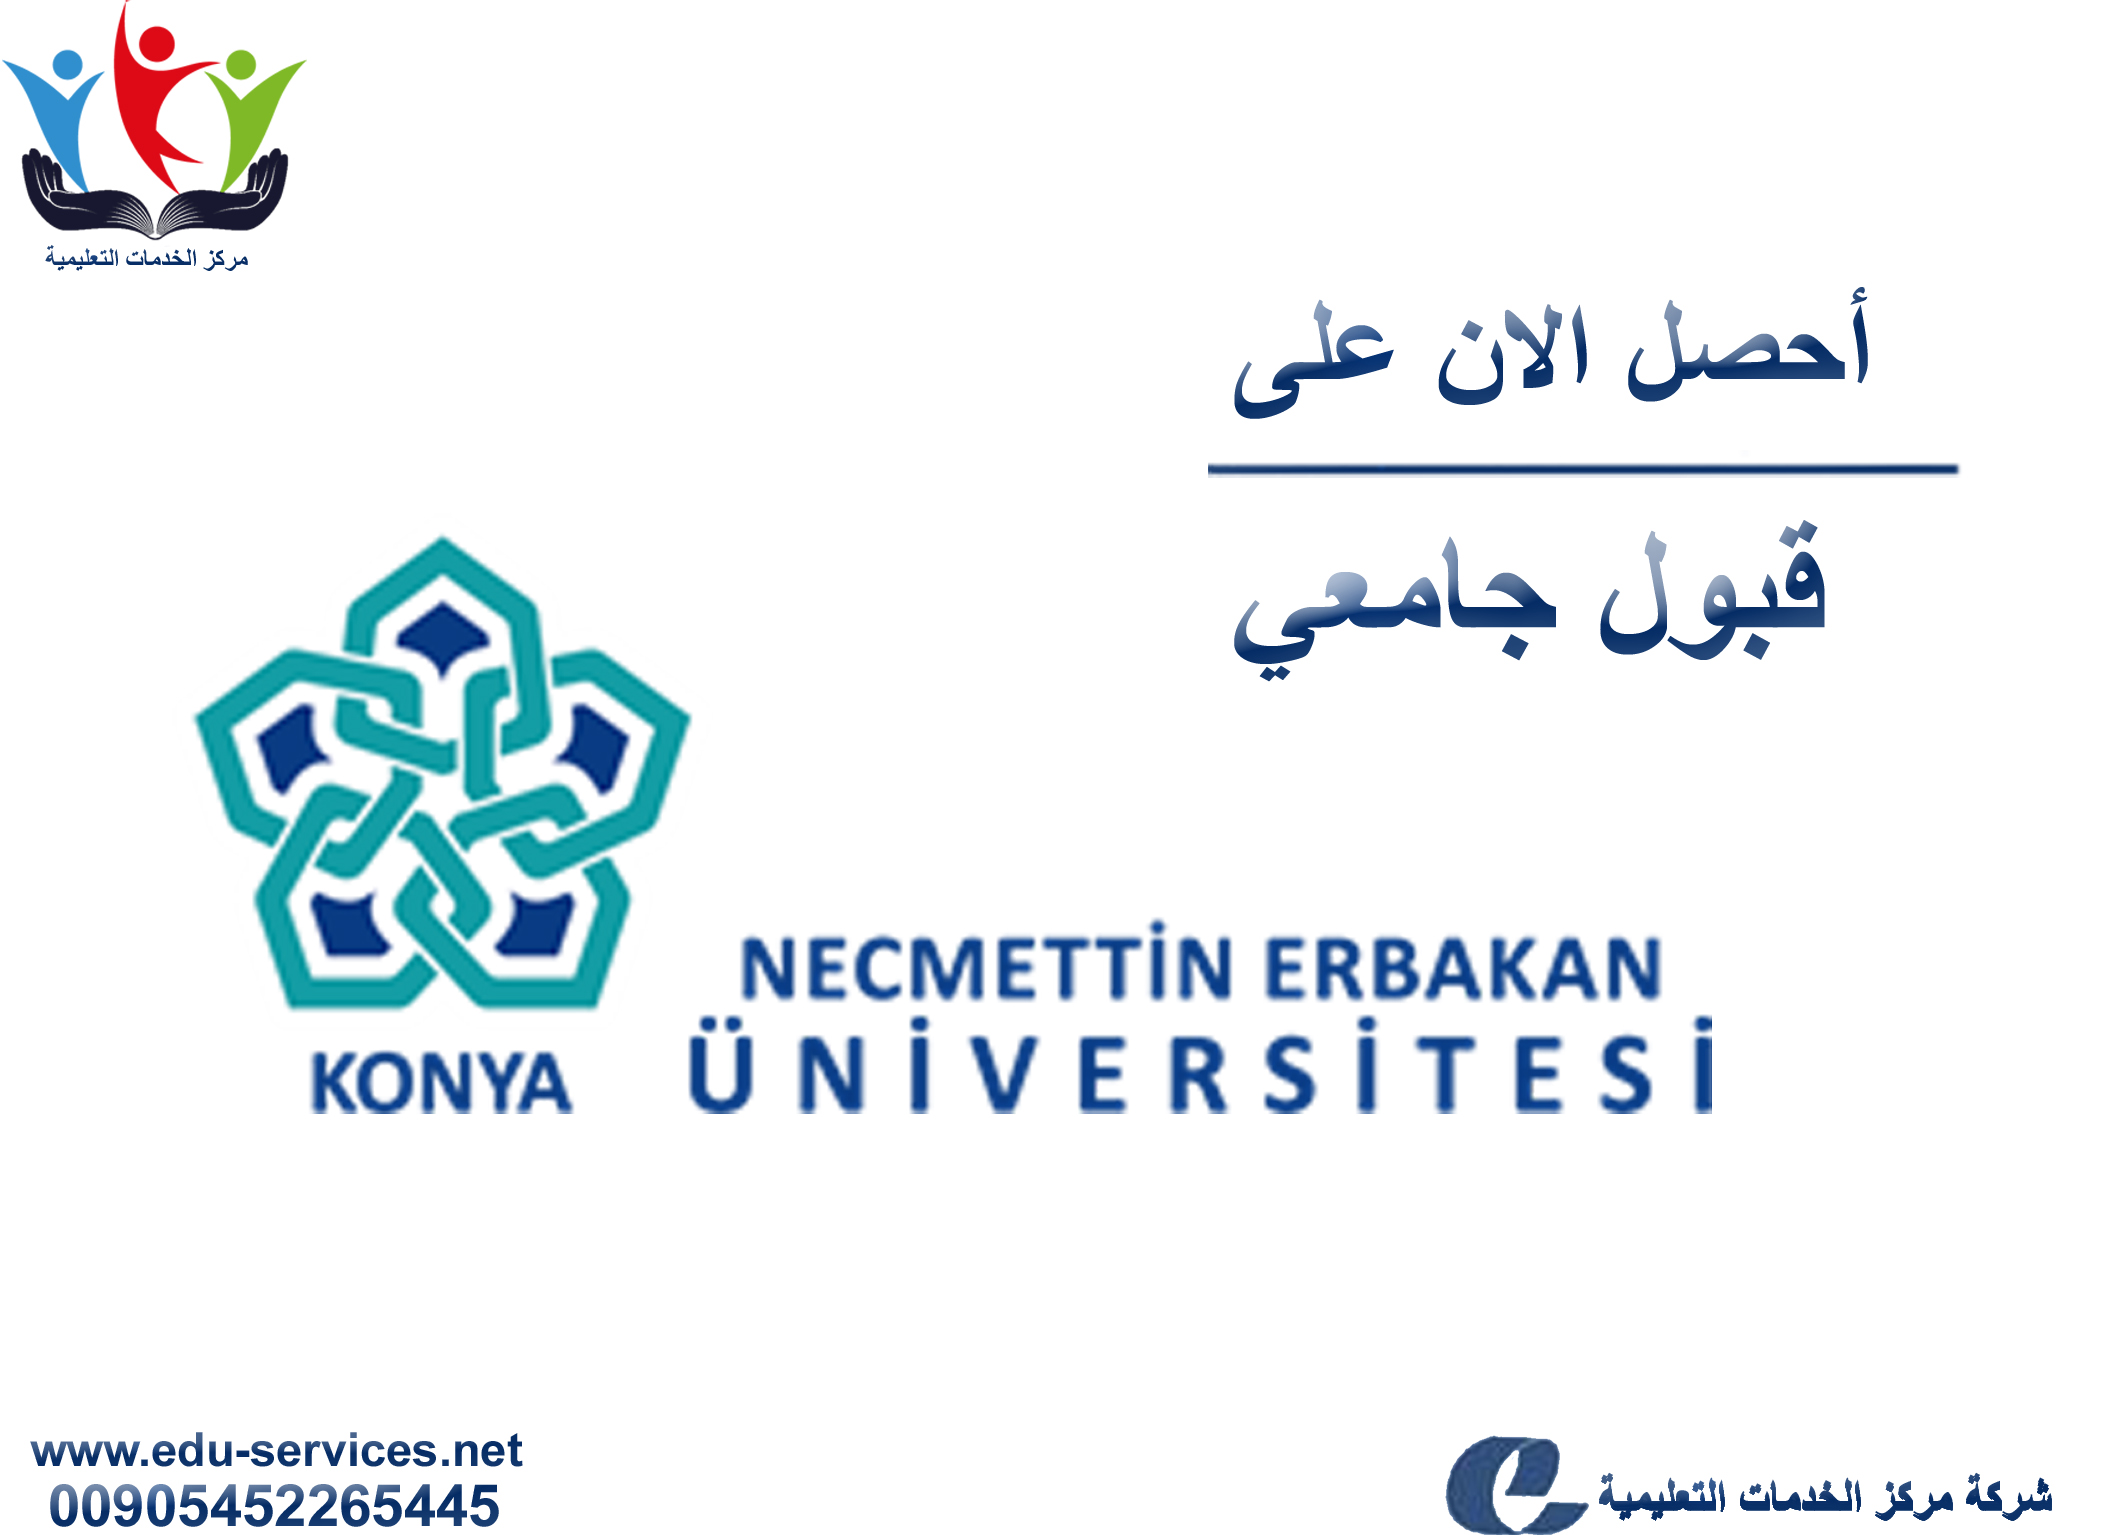 افتتاح التسجيل على جامعة نجم الدين أربكان للدراسات العليا للفصل الدراسي الثاني 2019/2018